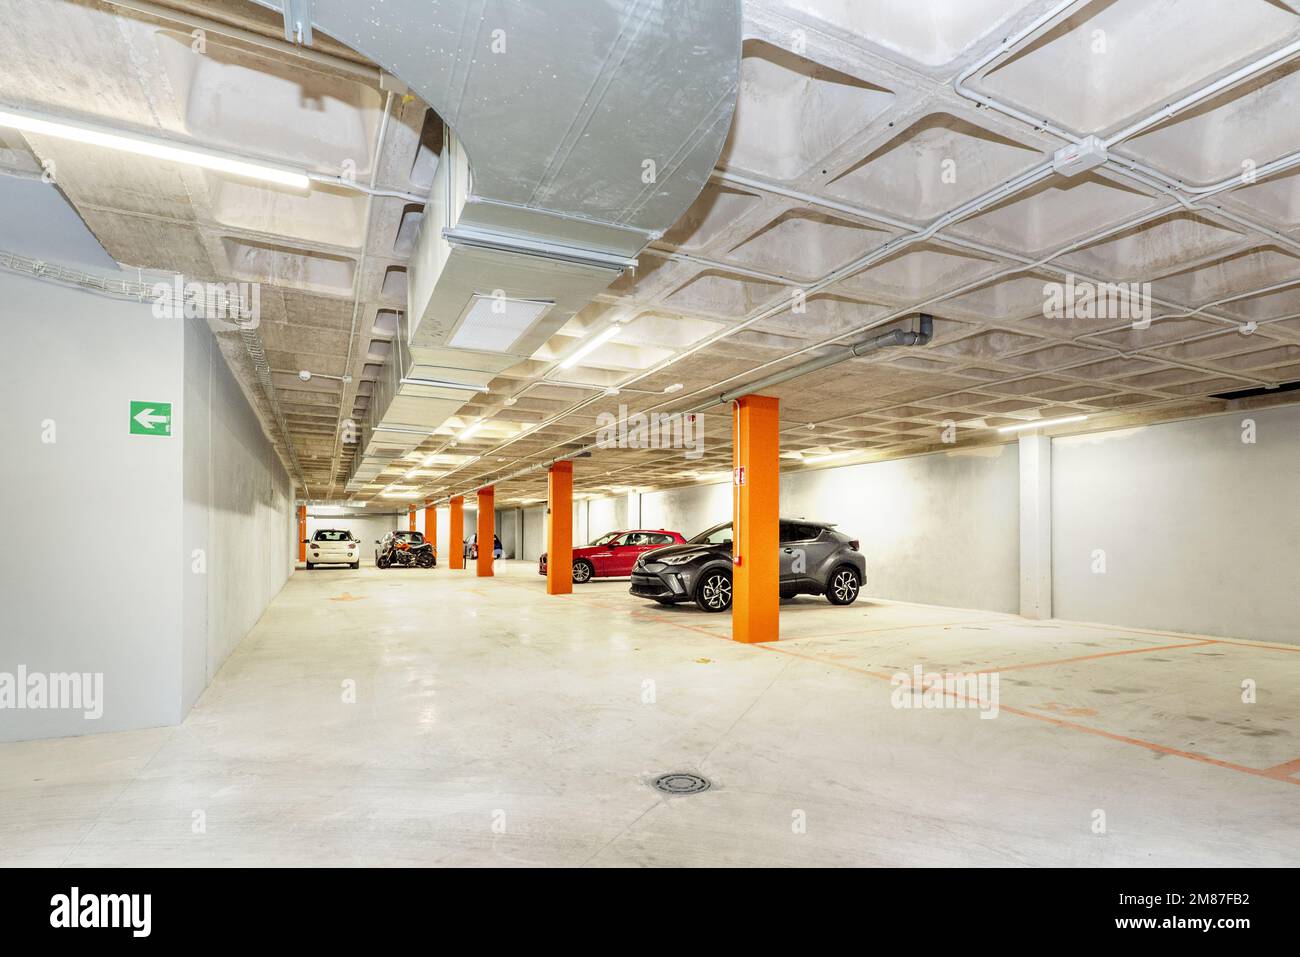 Nouveau garage de bâtiment avec de grands espaces et des voies avec des planchers en béton poli Banque D'Images